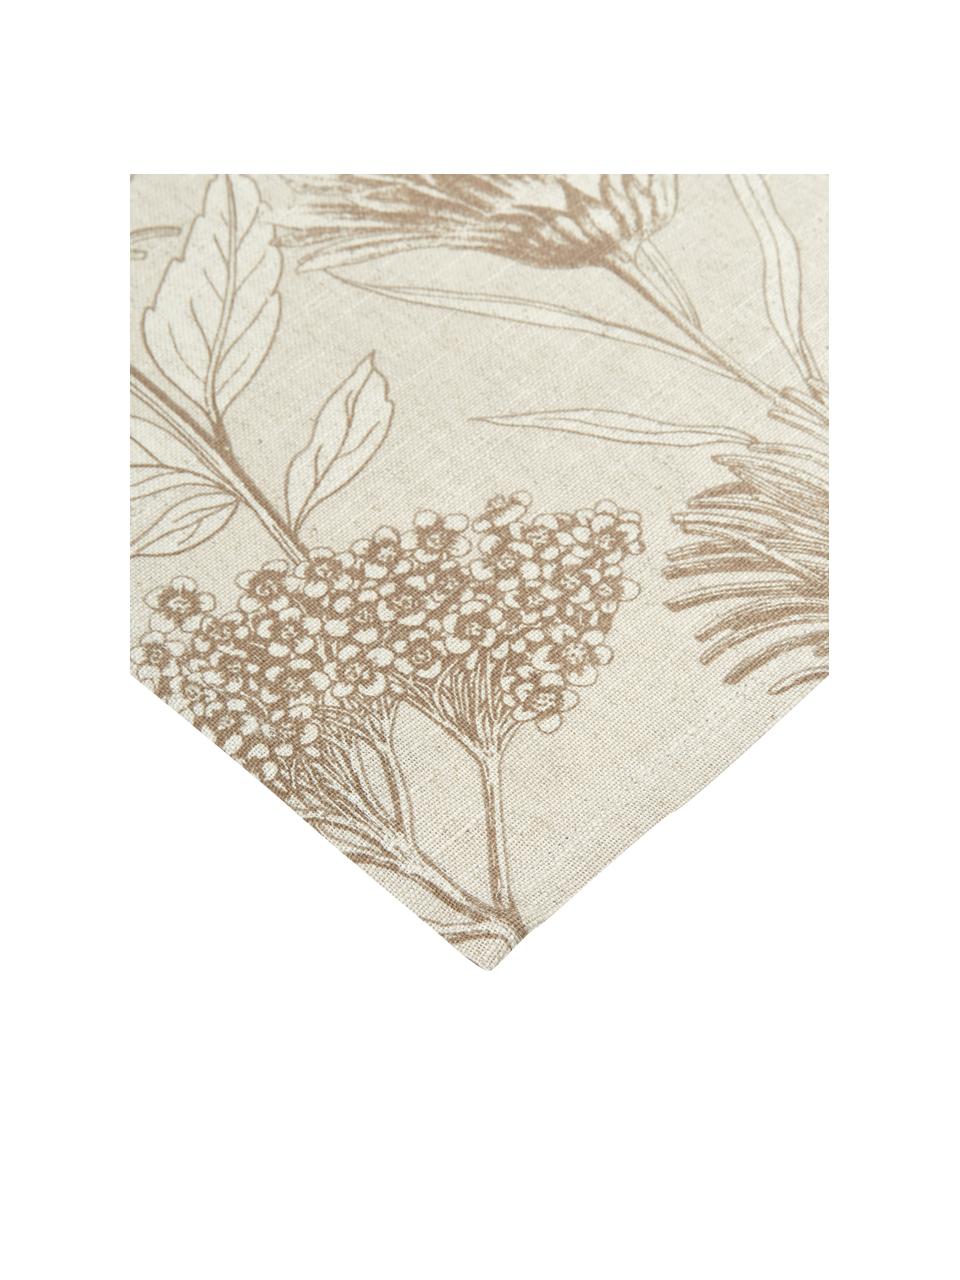 Theedoeken Freya met bloemenprint, 2 stuks, 86 % katoen, 14 % linnen, Beige, bruin, B 50 cm x L 70 cm